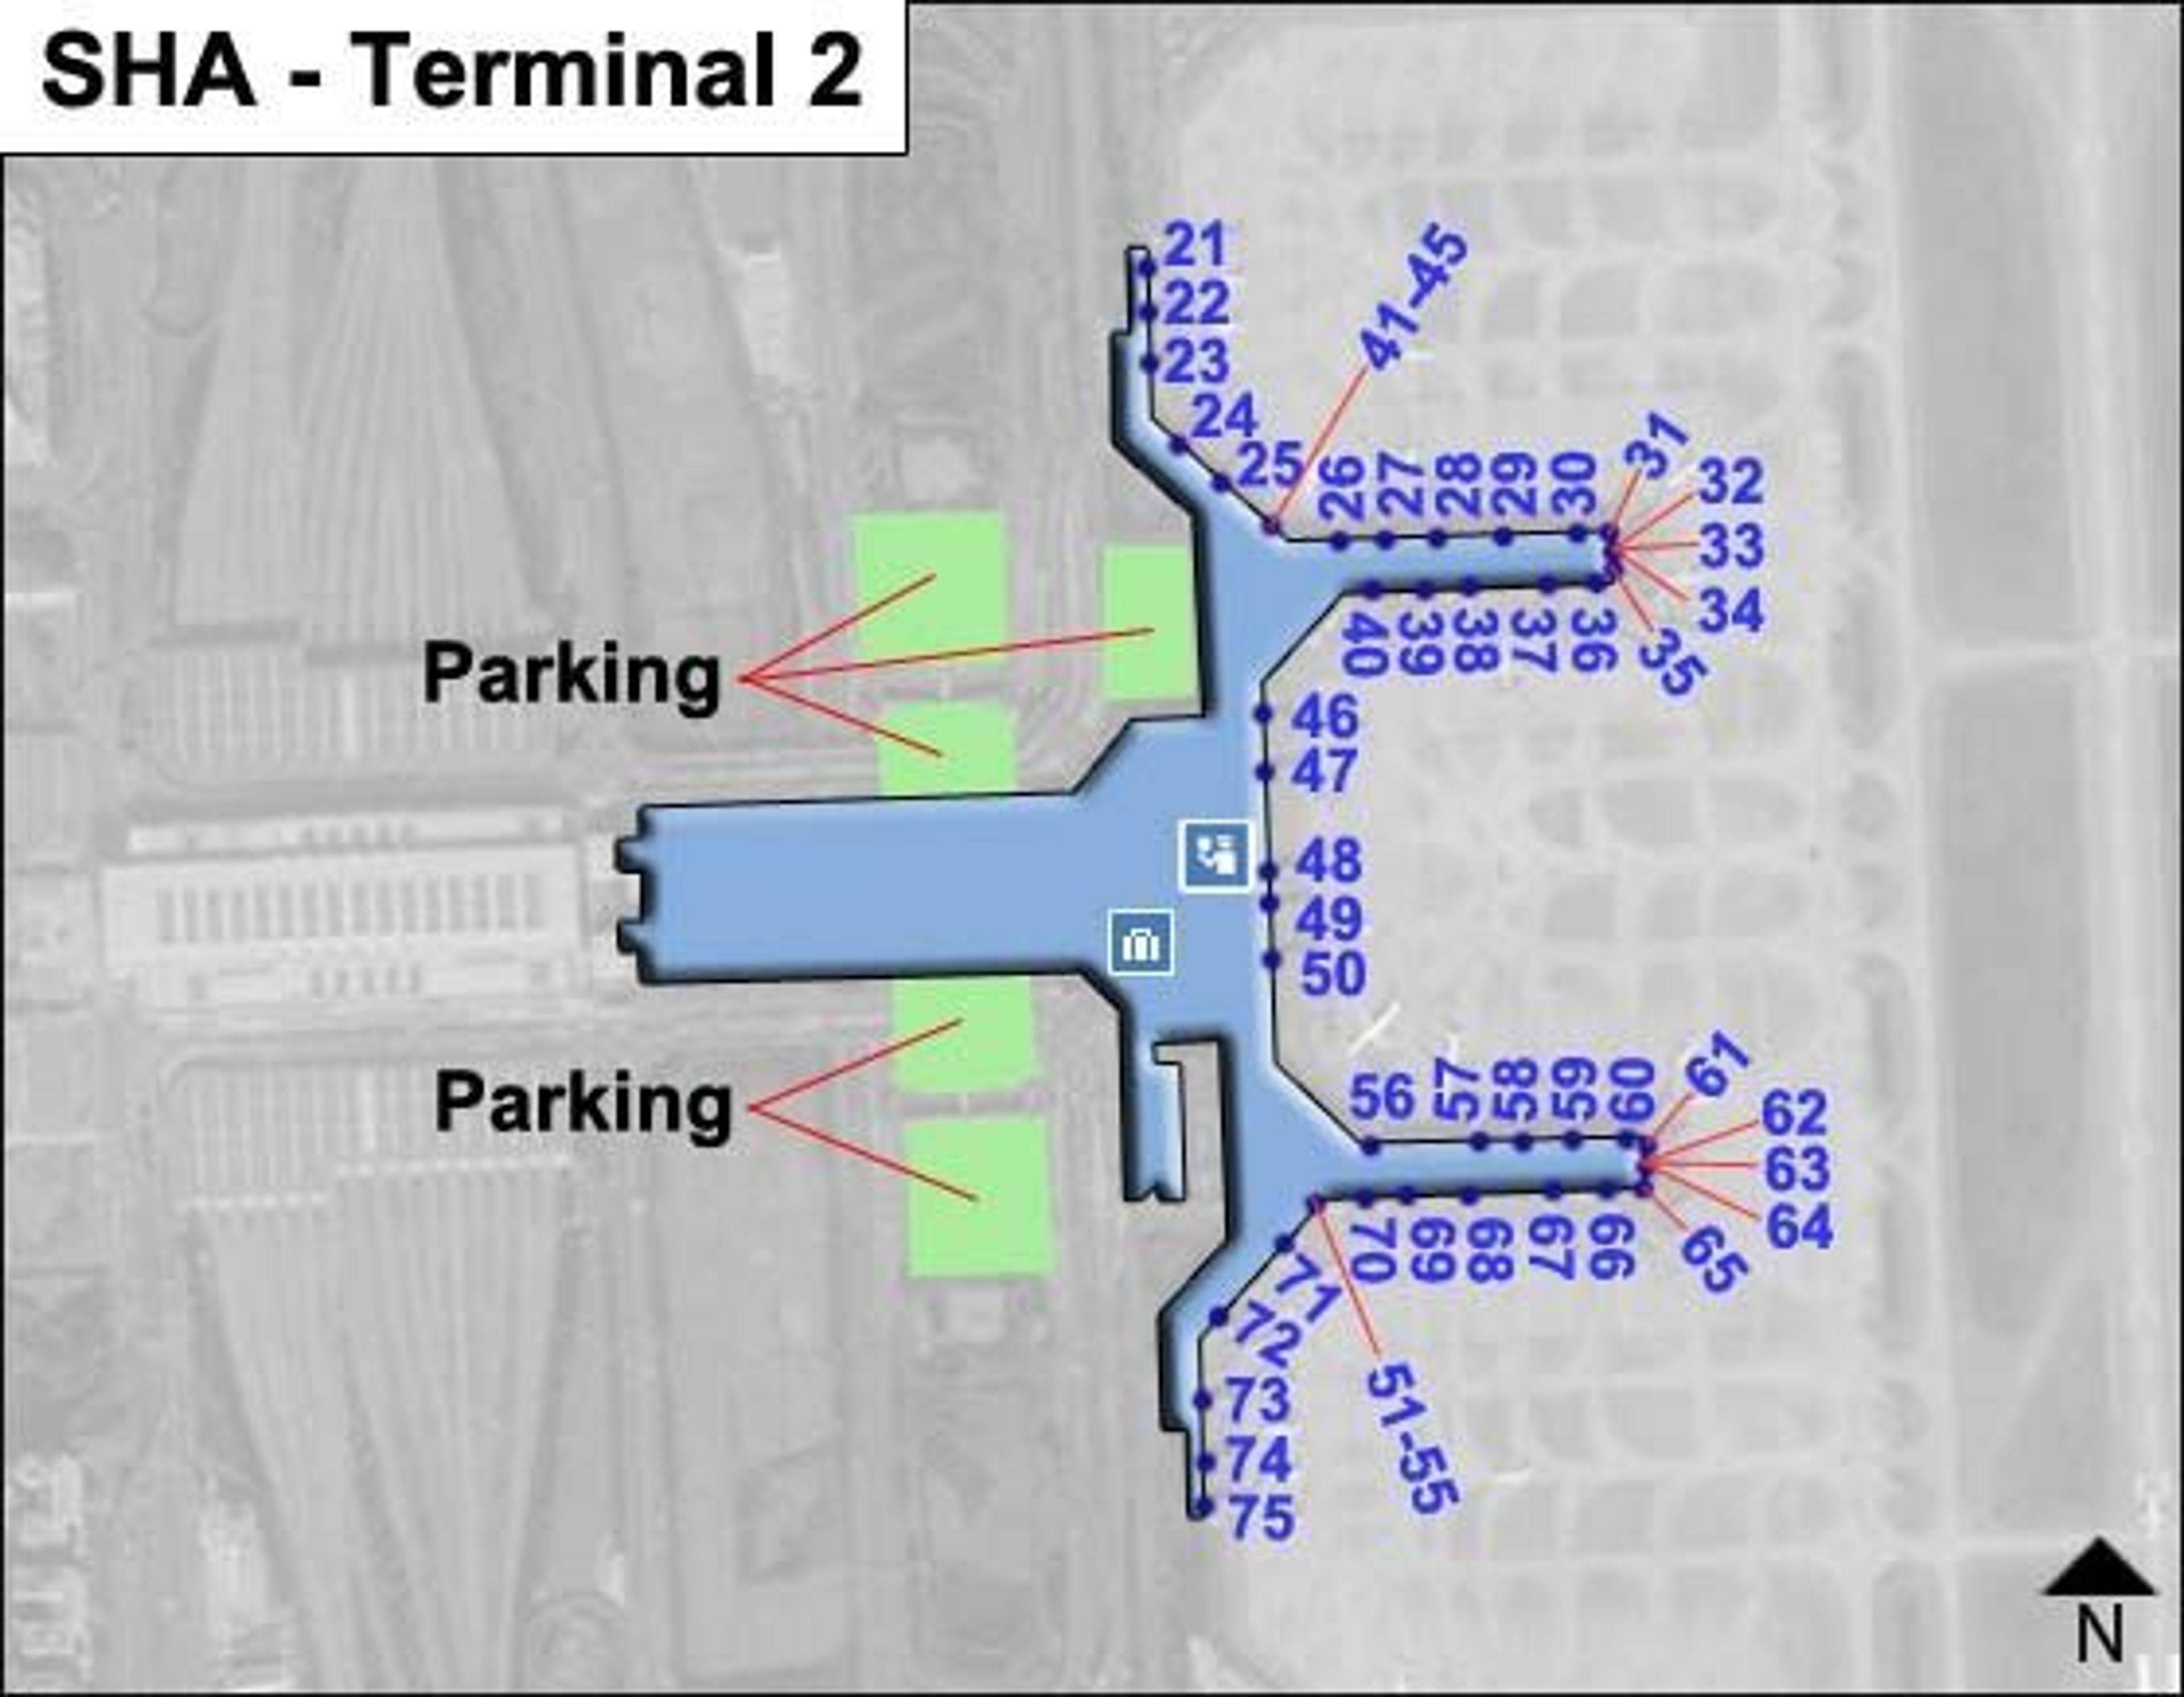 SHA Terminal 2 Map